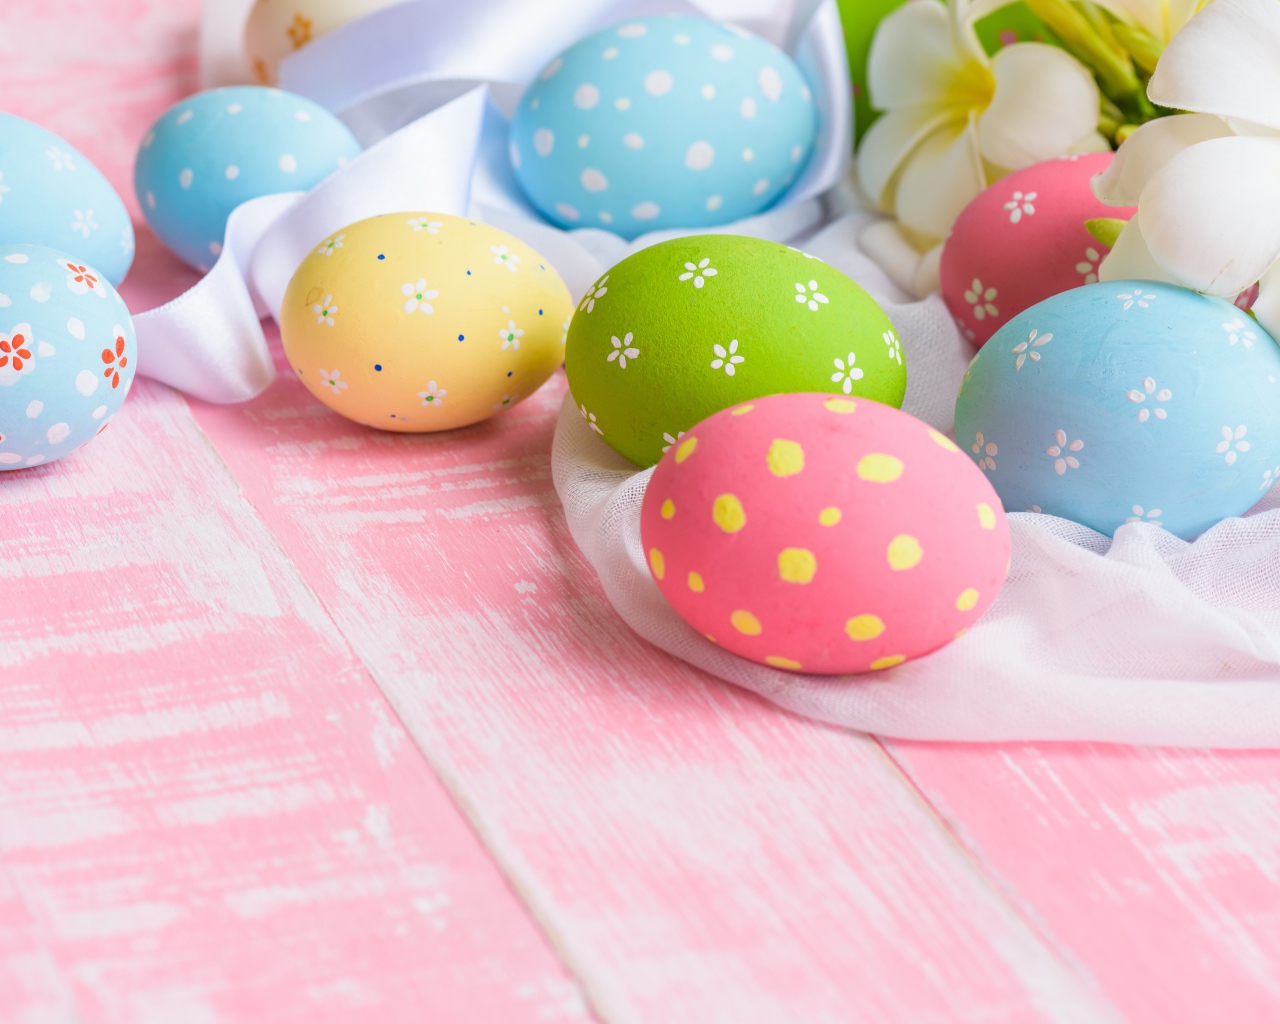 Красивые разноцветные яйца на столе на праздник Пасха